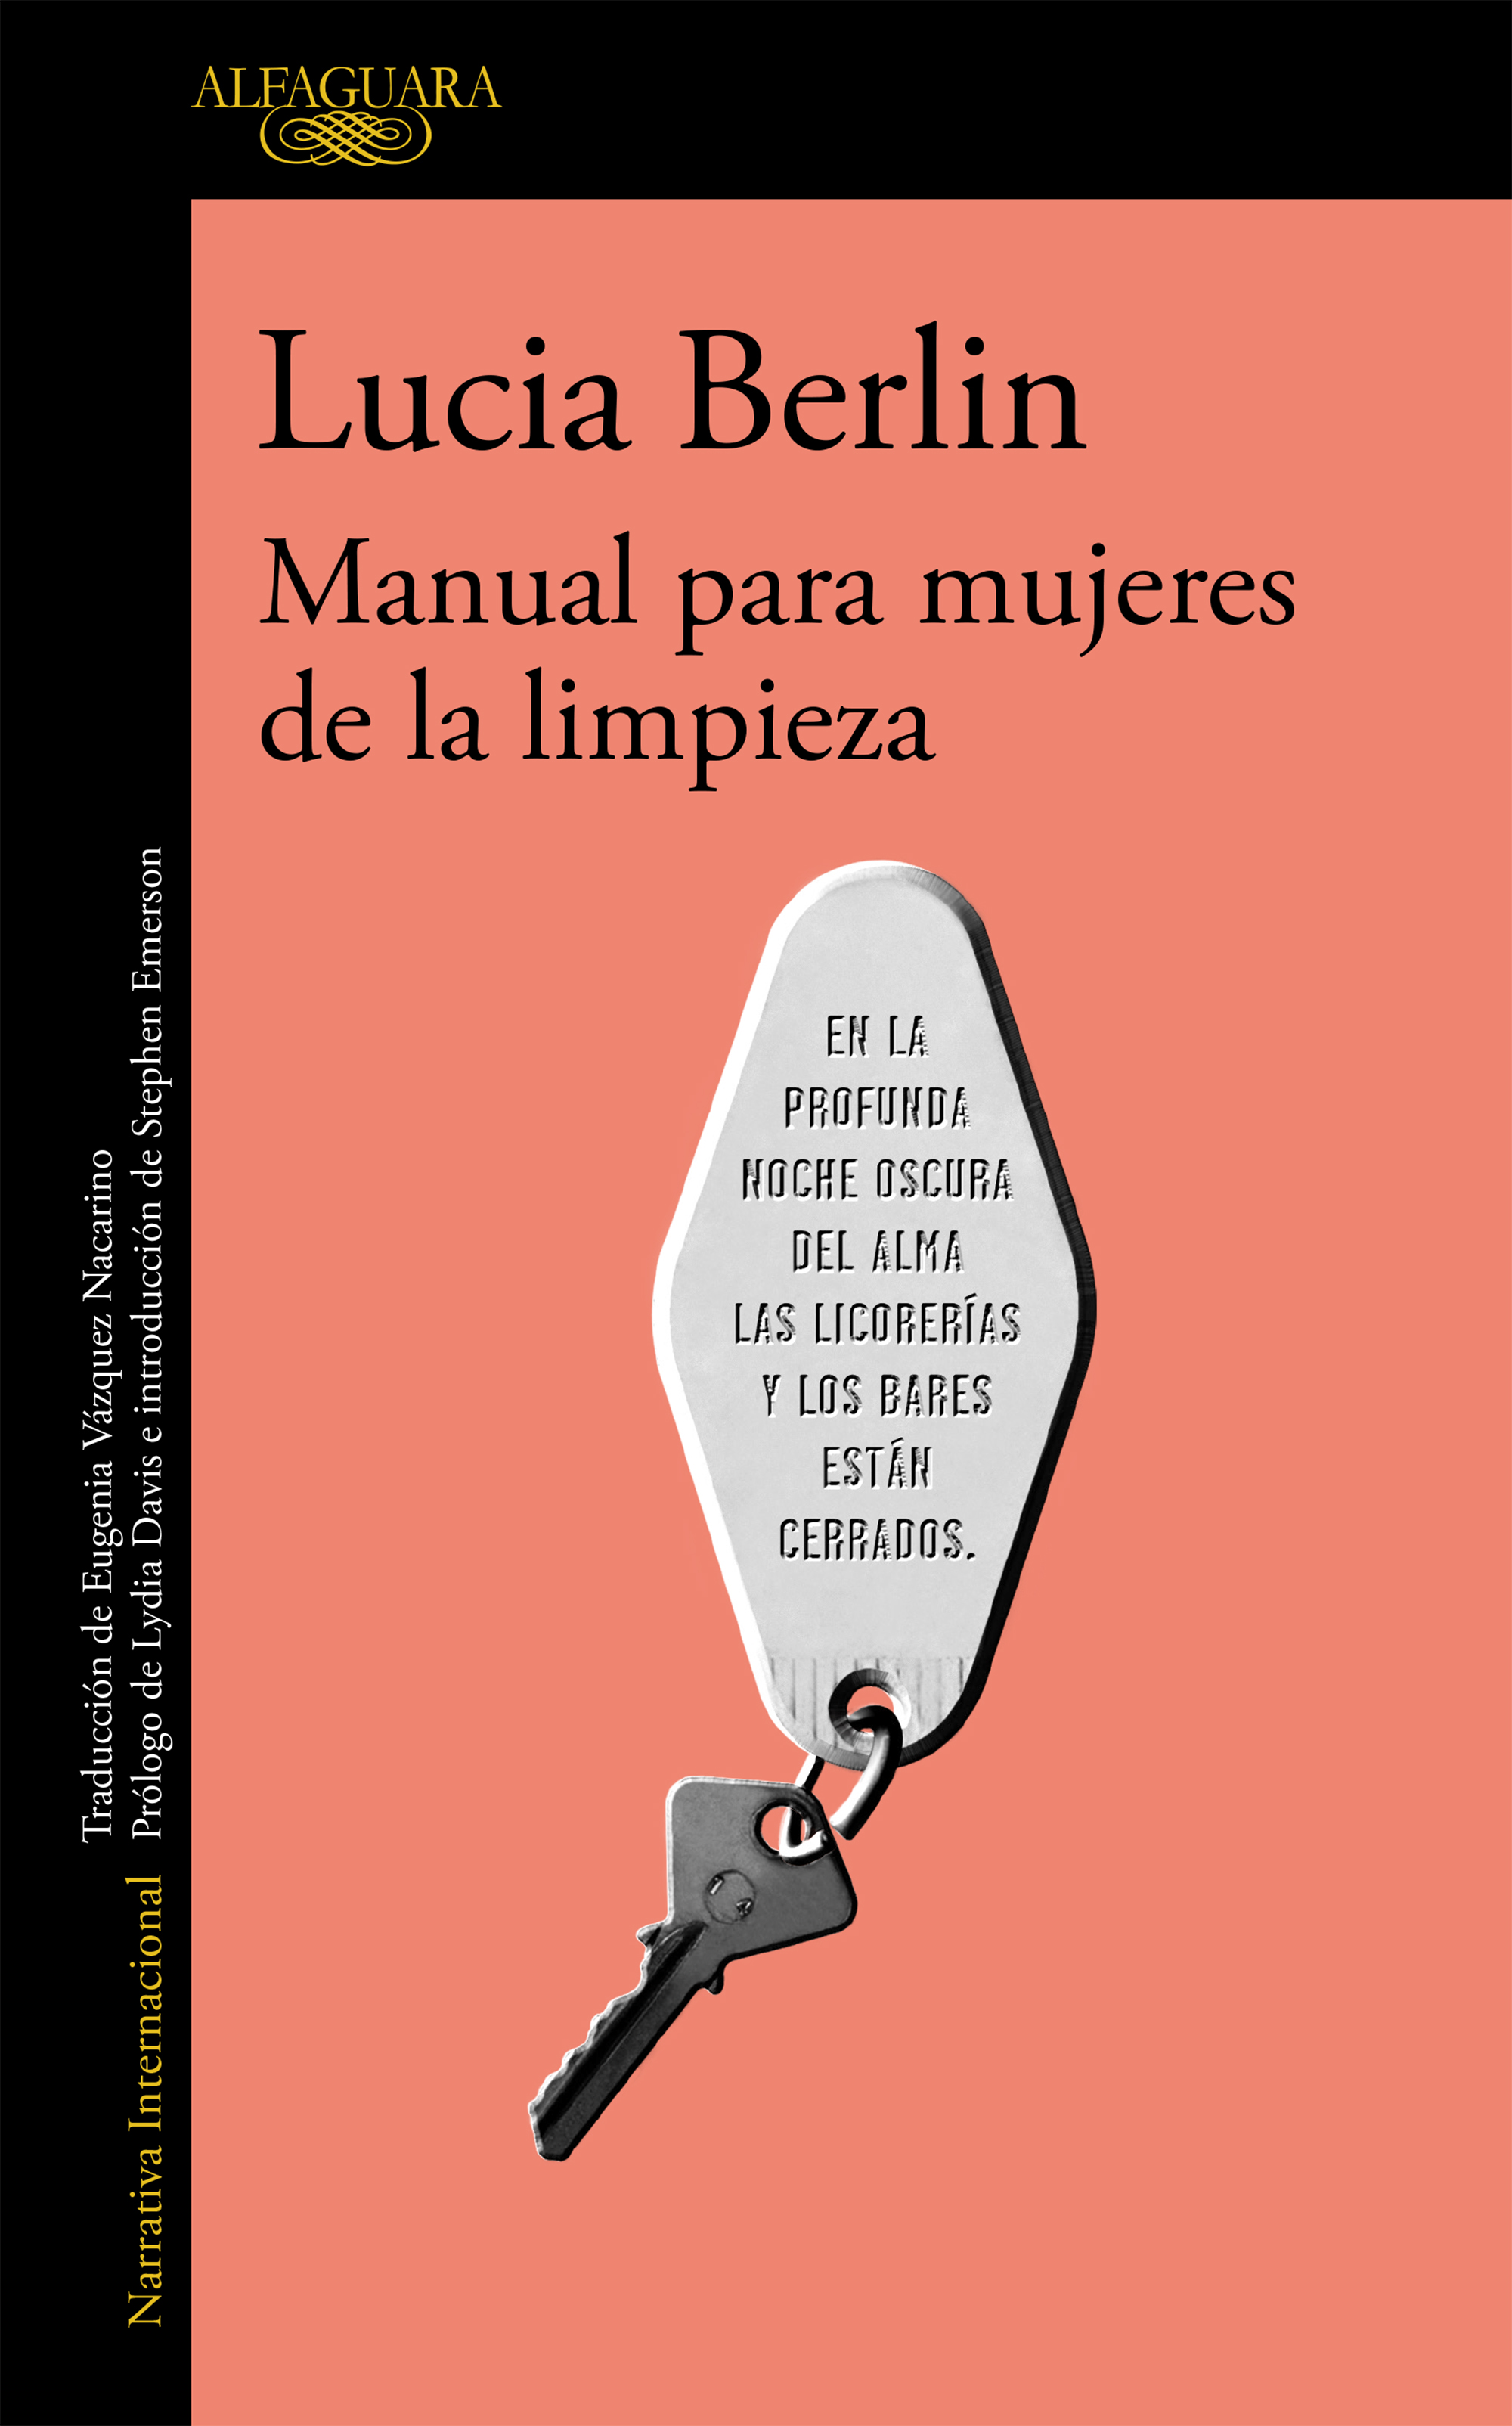 'Manual para mujeres de la limpieza' - Lucia Berlin